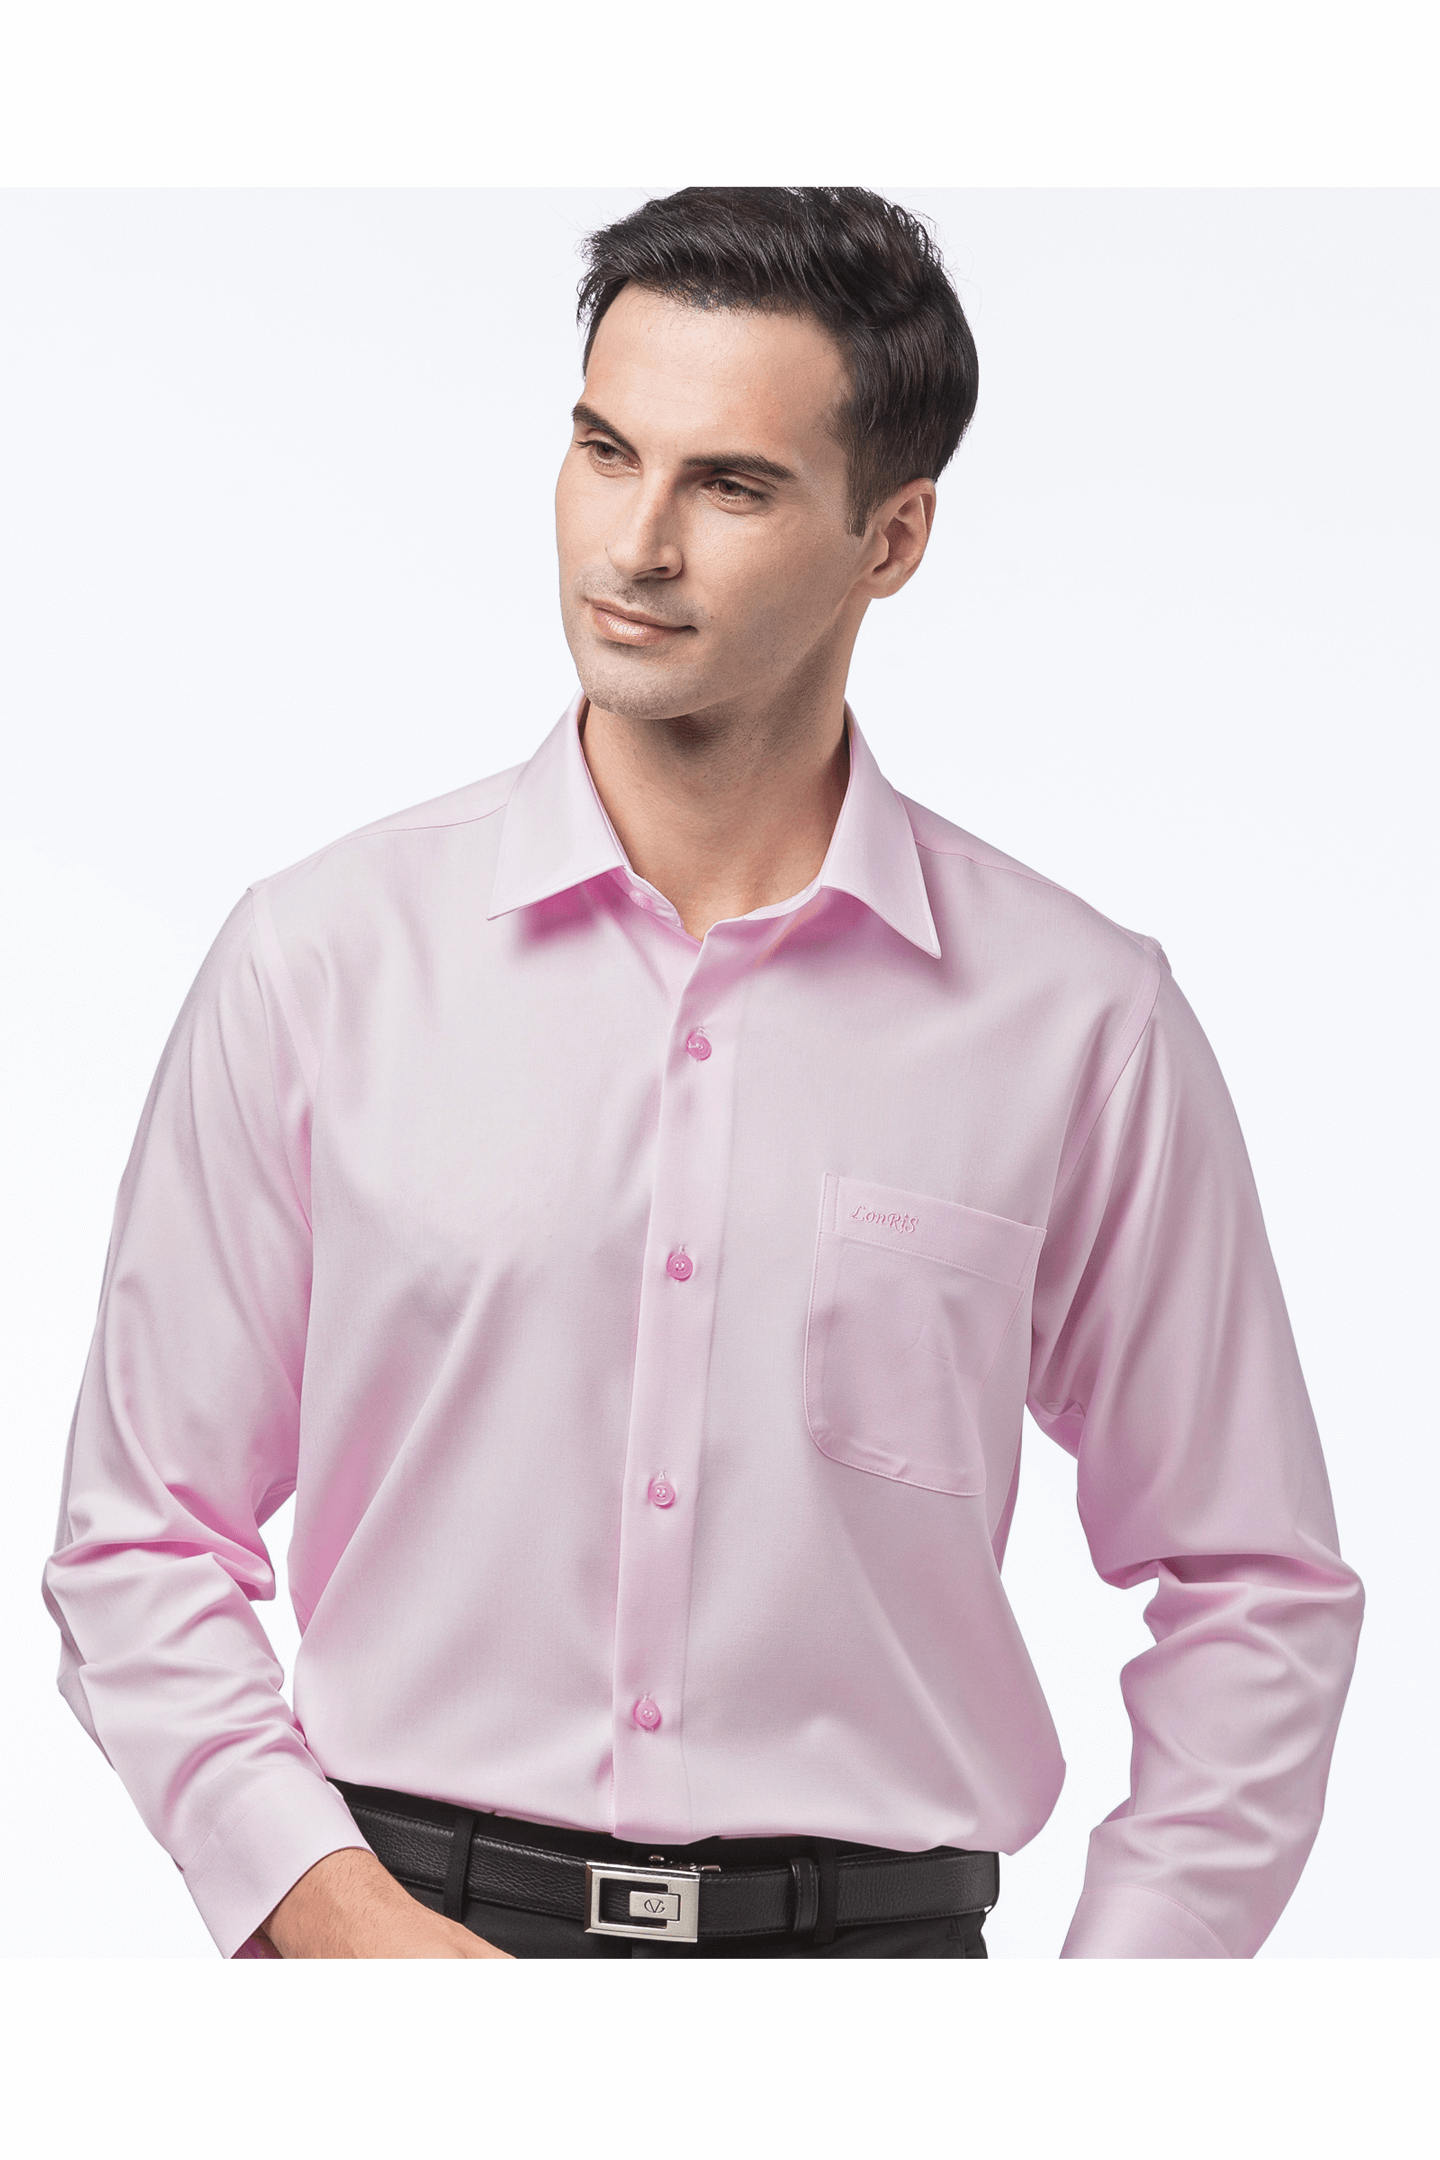 粉色素面長袖襯衫 / 抗皺 吸濕排汗